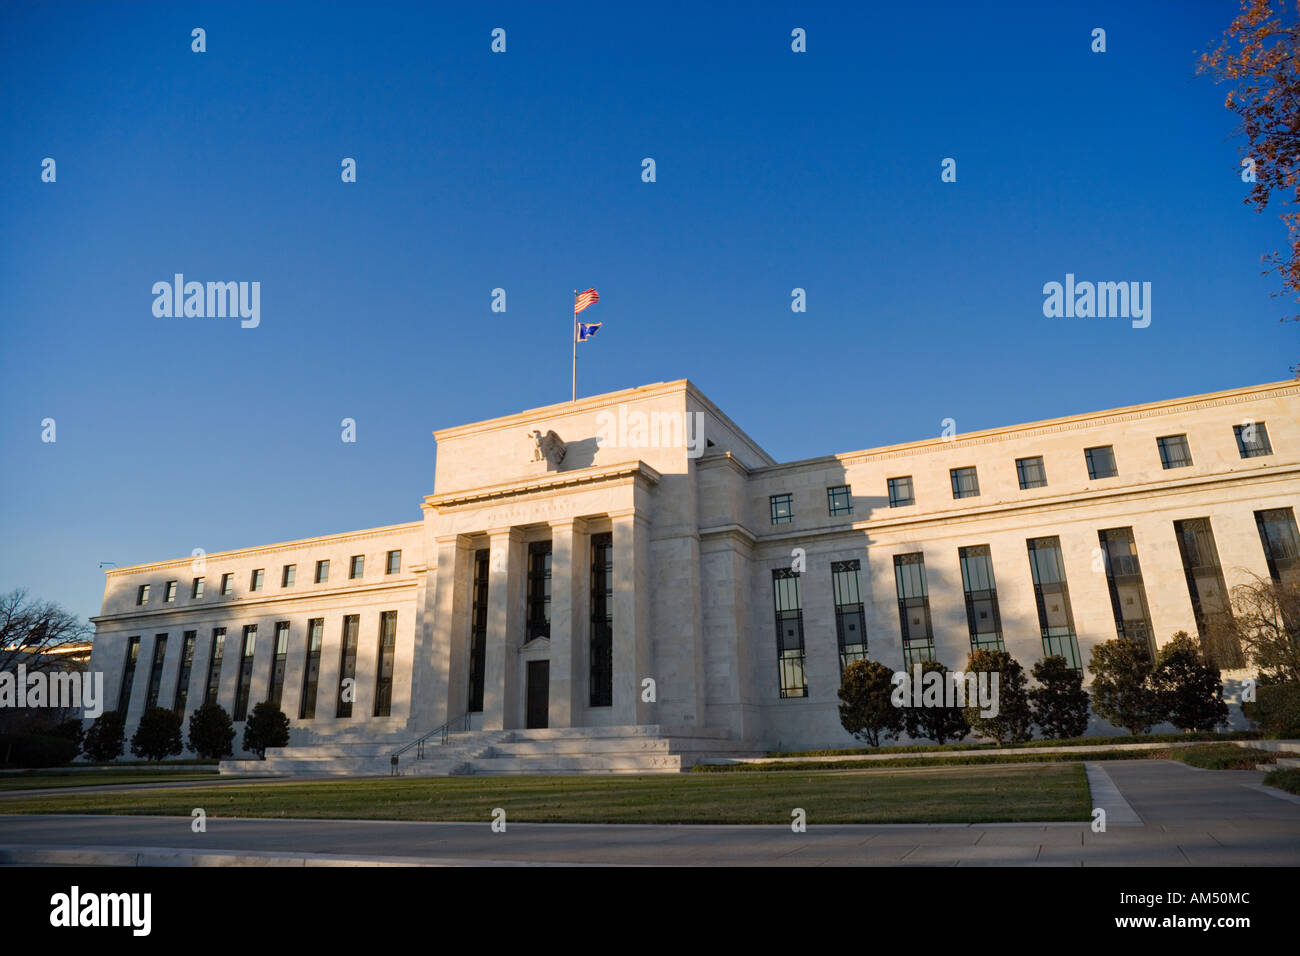 La Fed, Banque de Réserve fédérale, Washington DC. Entrée principale sur Constitution Avenue près du National Mall. Banque D'Images